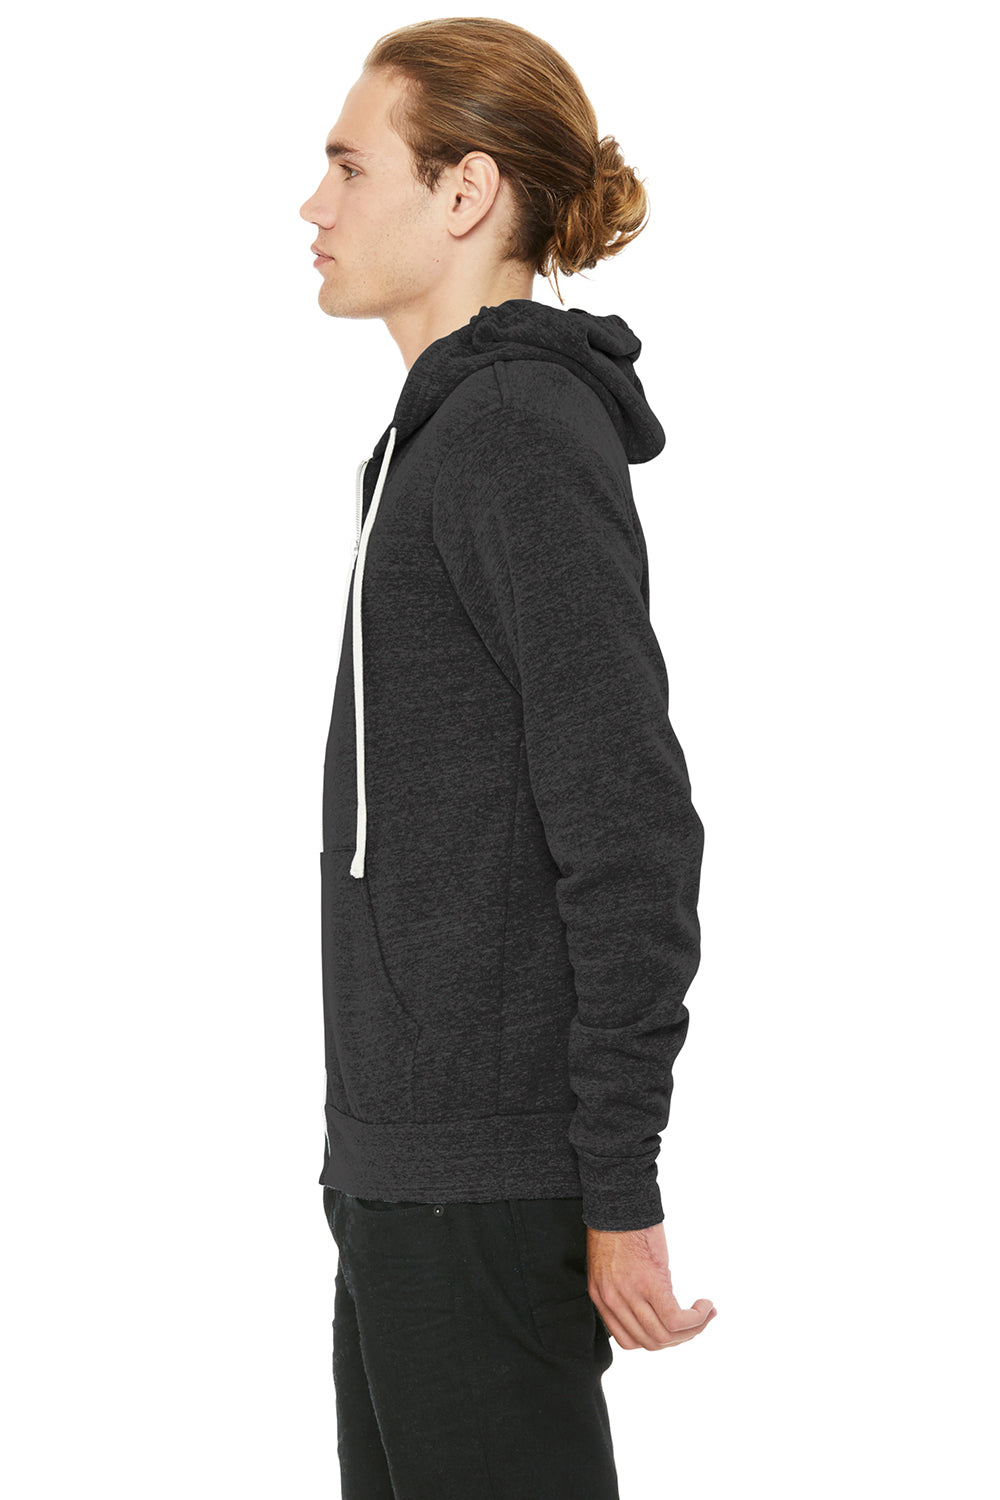 Bella + Canvas BC3909/3909 Mens Sponge Fleece Full Zip Hooded Sweatshirt Hoodie Charcoal Black Model Side